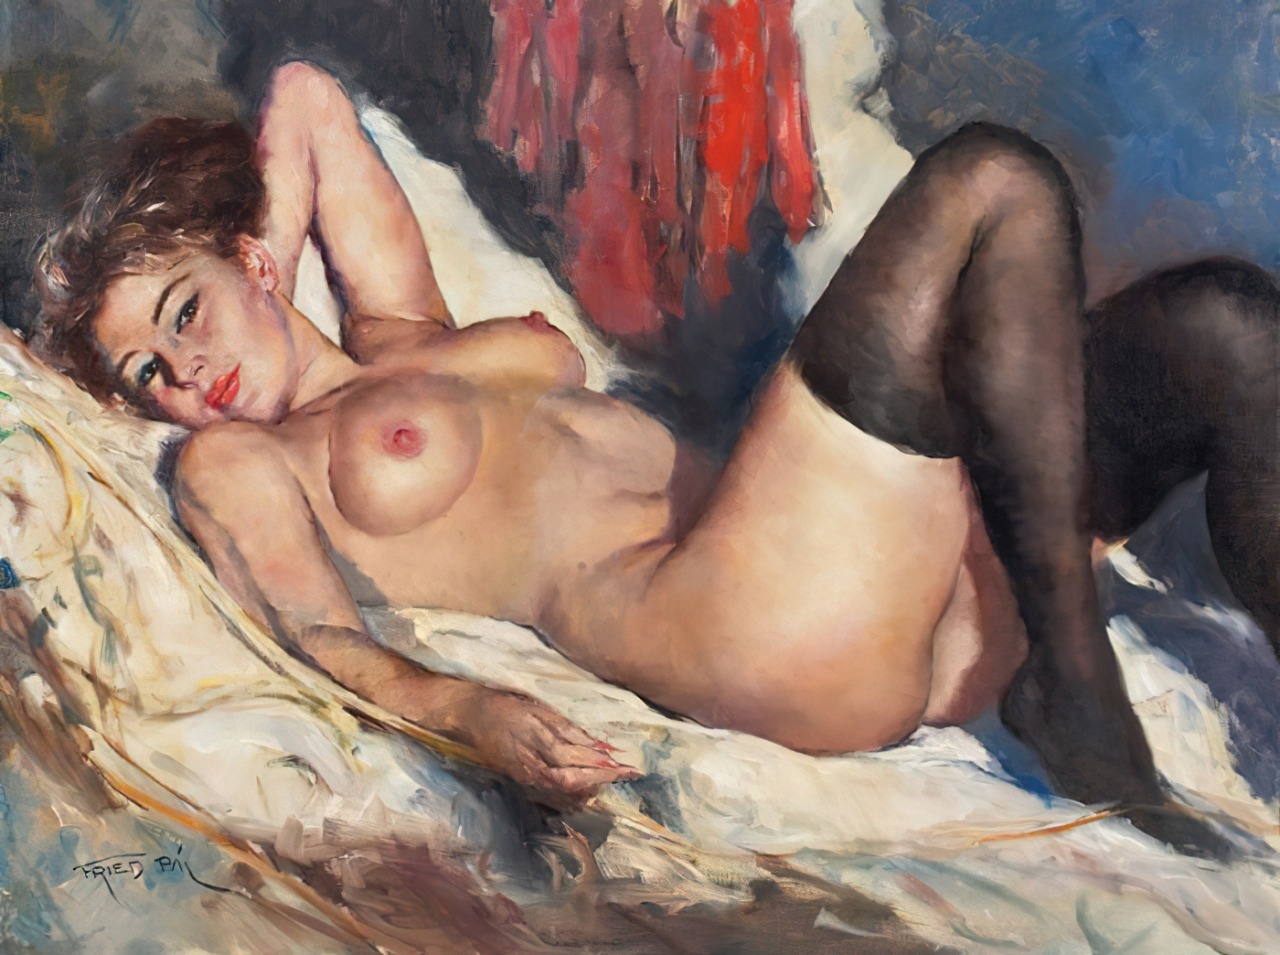 художник рисует на голых женщинах фото 79